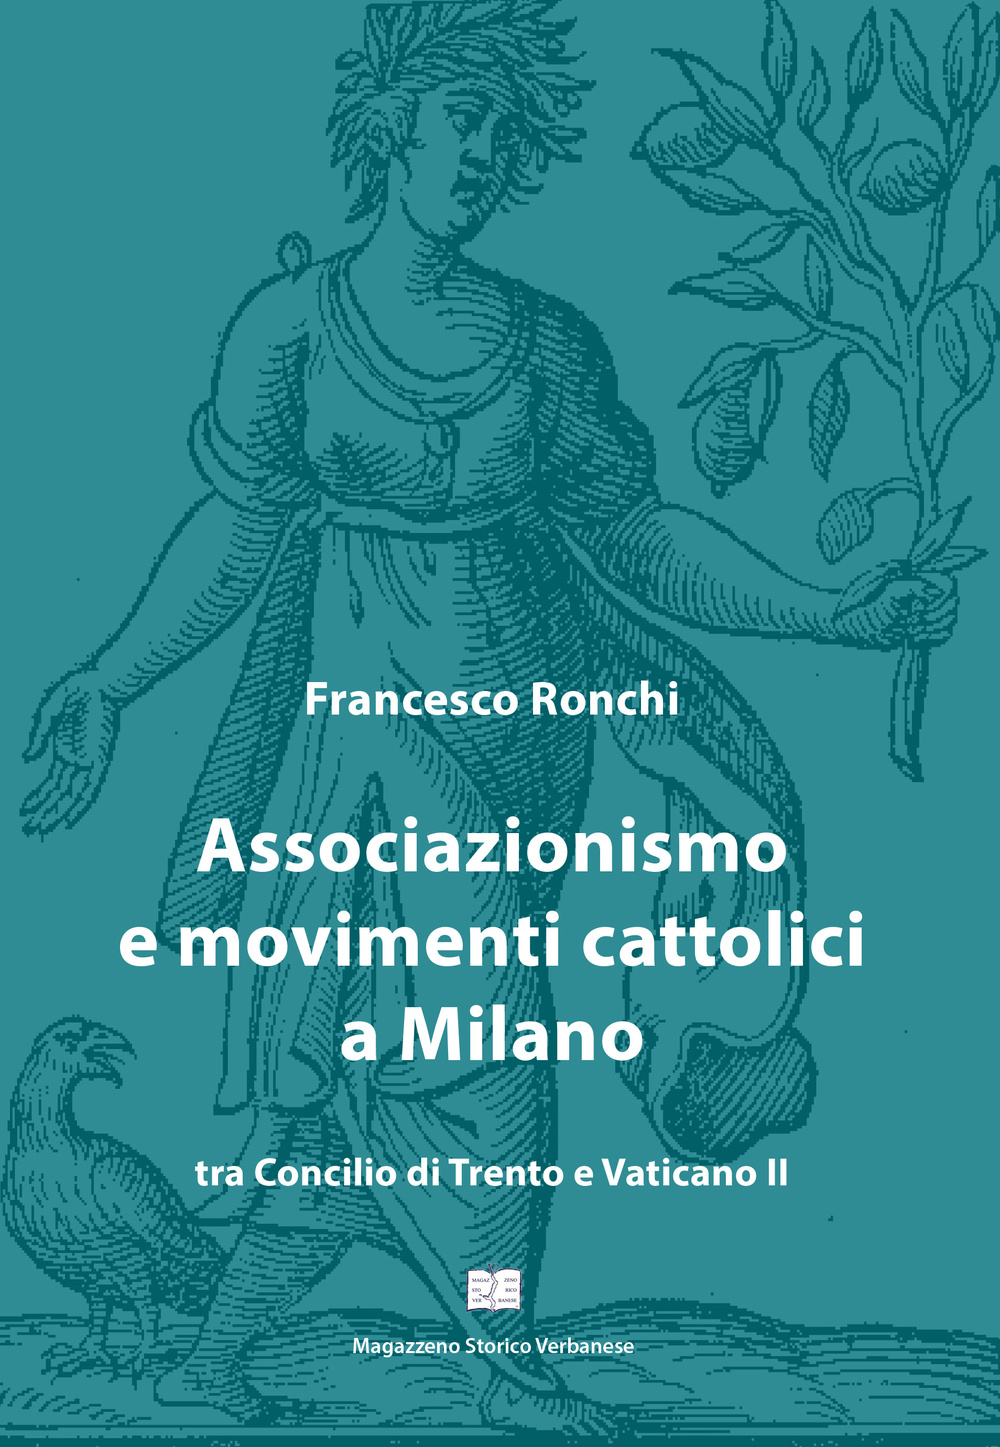 Associazionismo e movimenti cattolici a Milano tra Concilio di Trento e Vaticano II